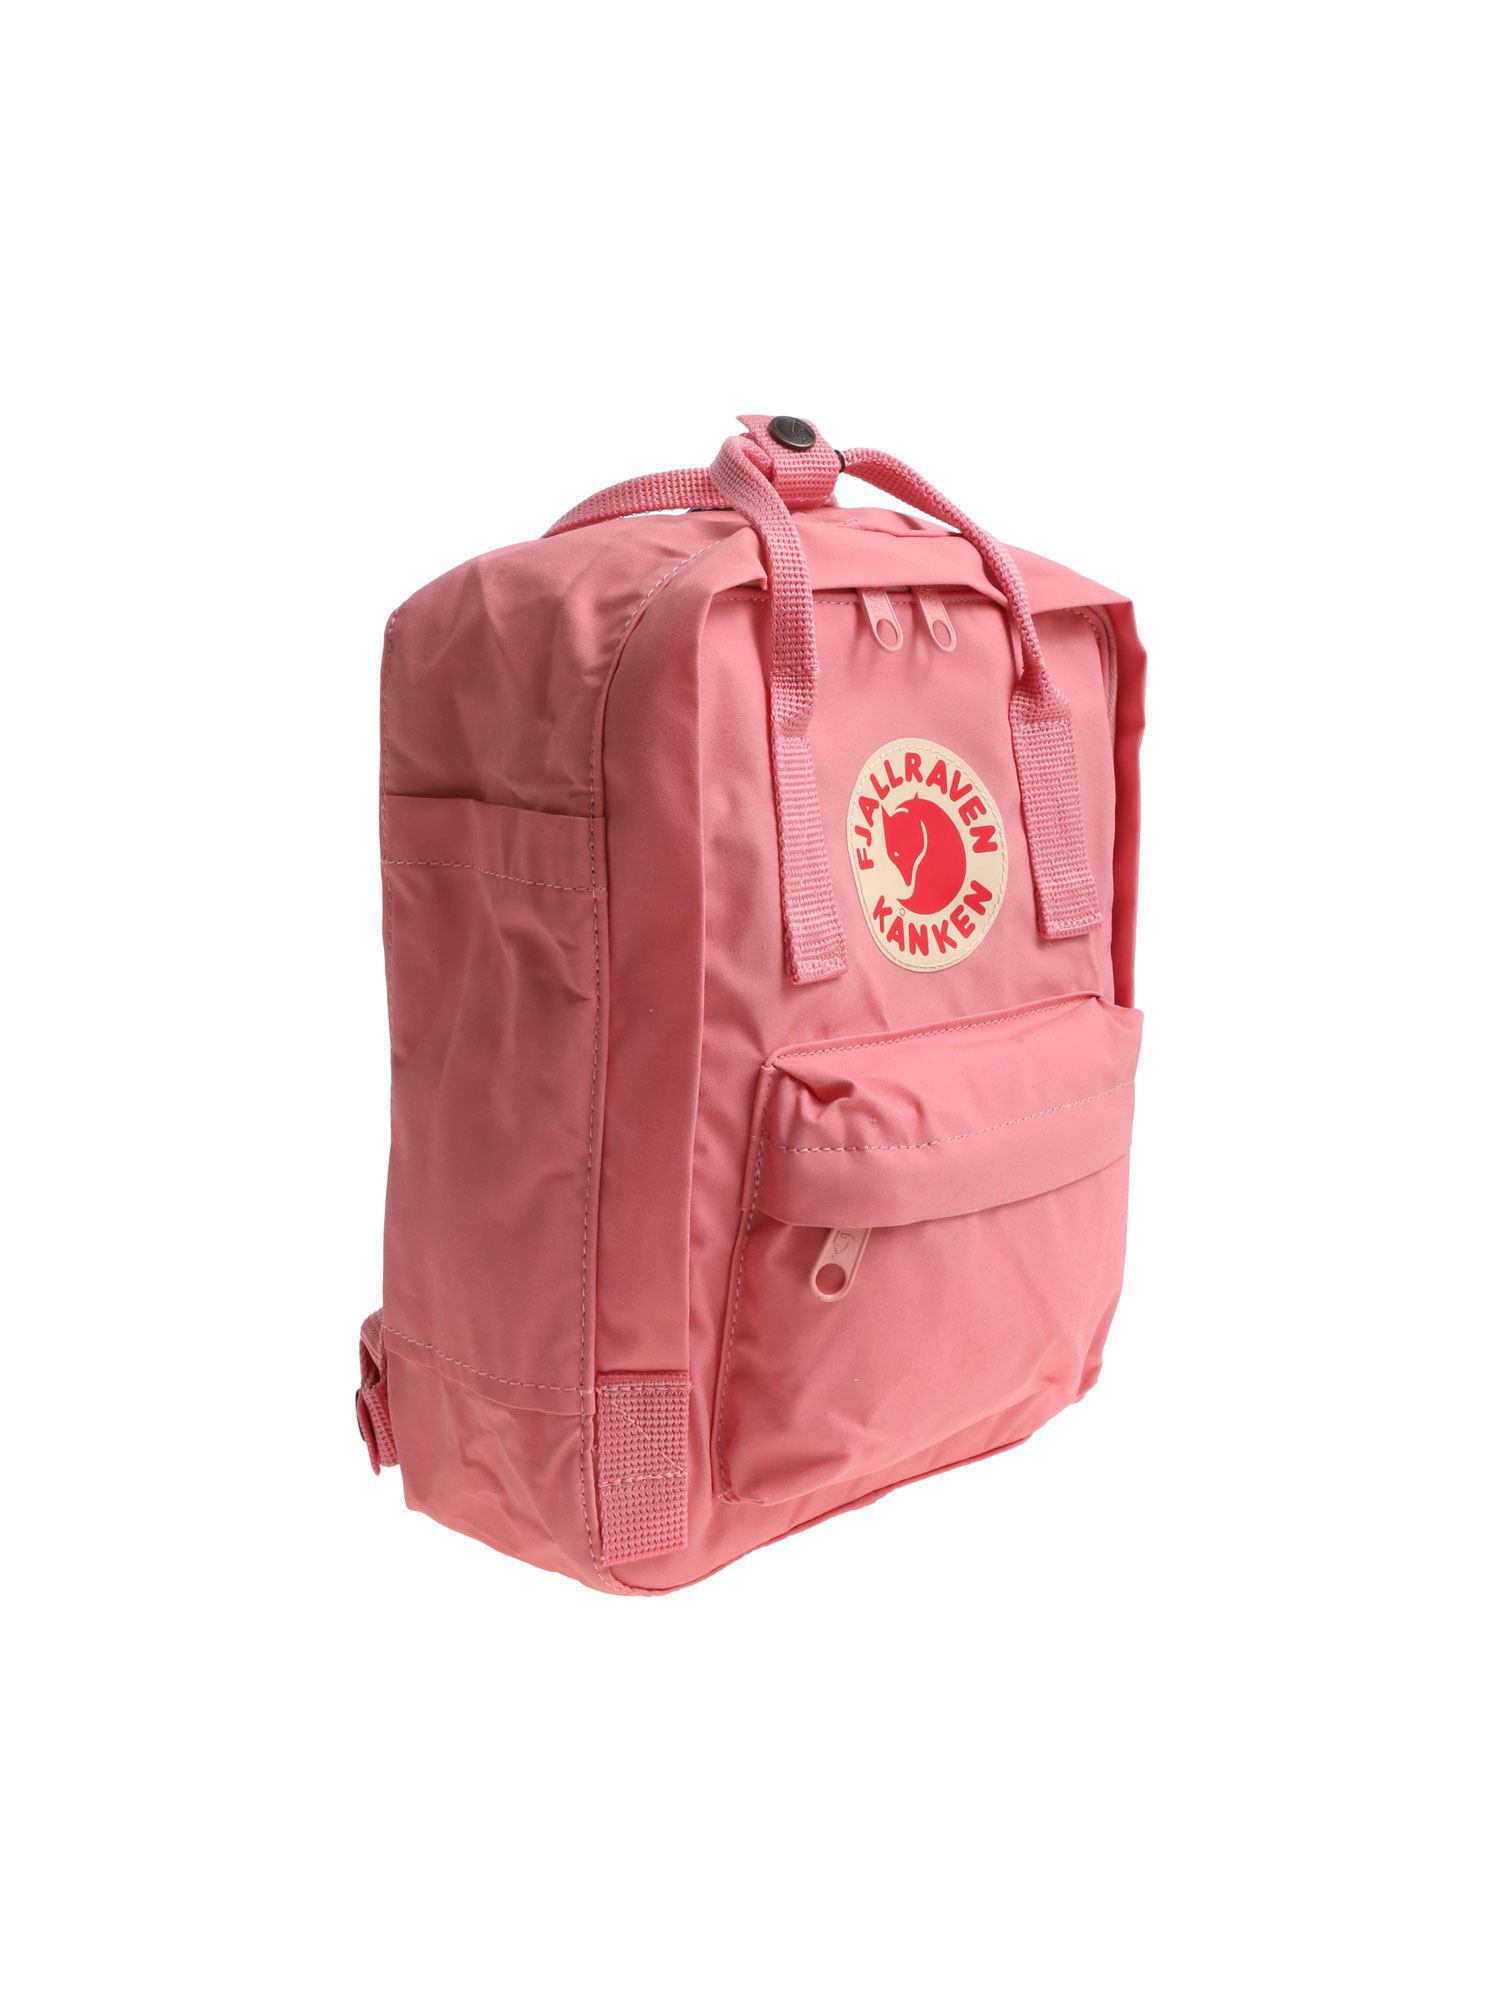 Fjallraven Kanken Mini 7l Backpack in Pink for Men - Lyst